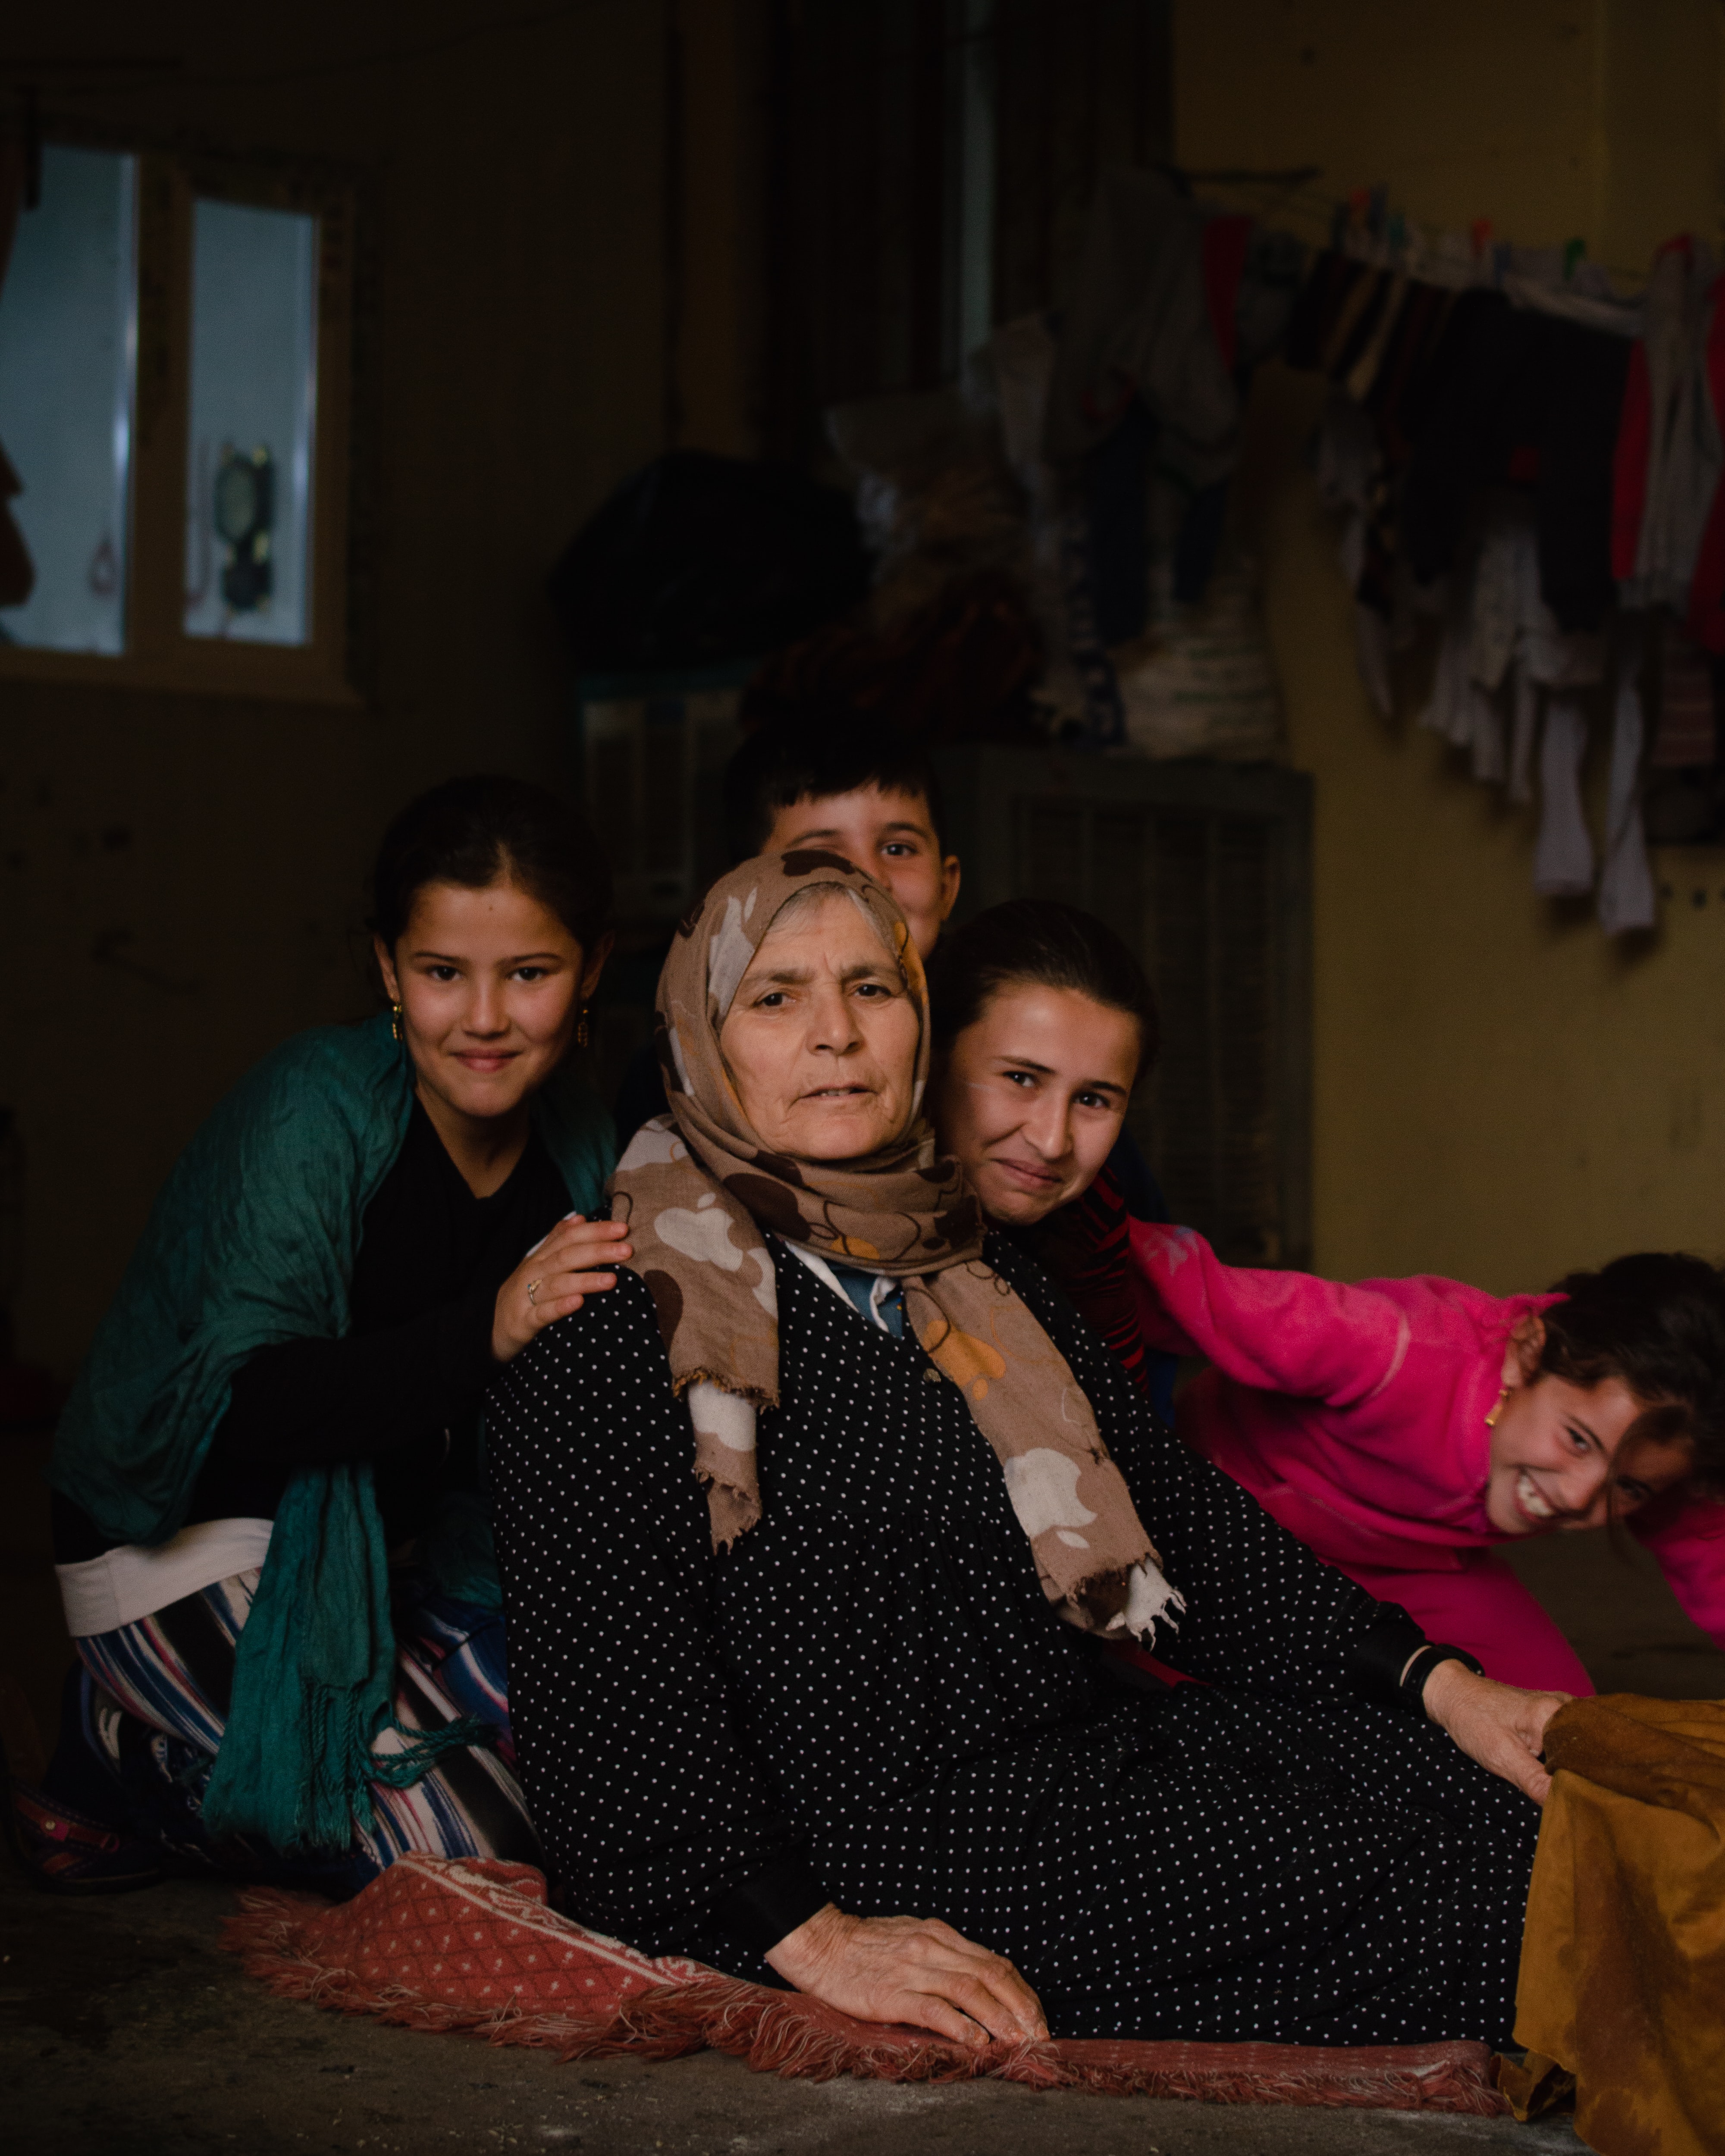 乌克兰的罗姆难民在波兰遭到拒绝;气候变化:1.5摄氏度的升温极限即将被打破